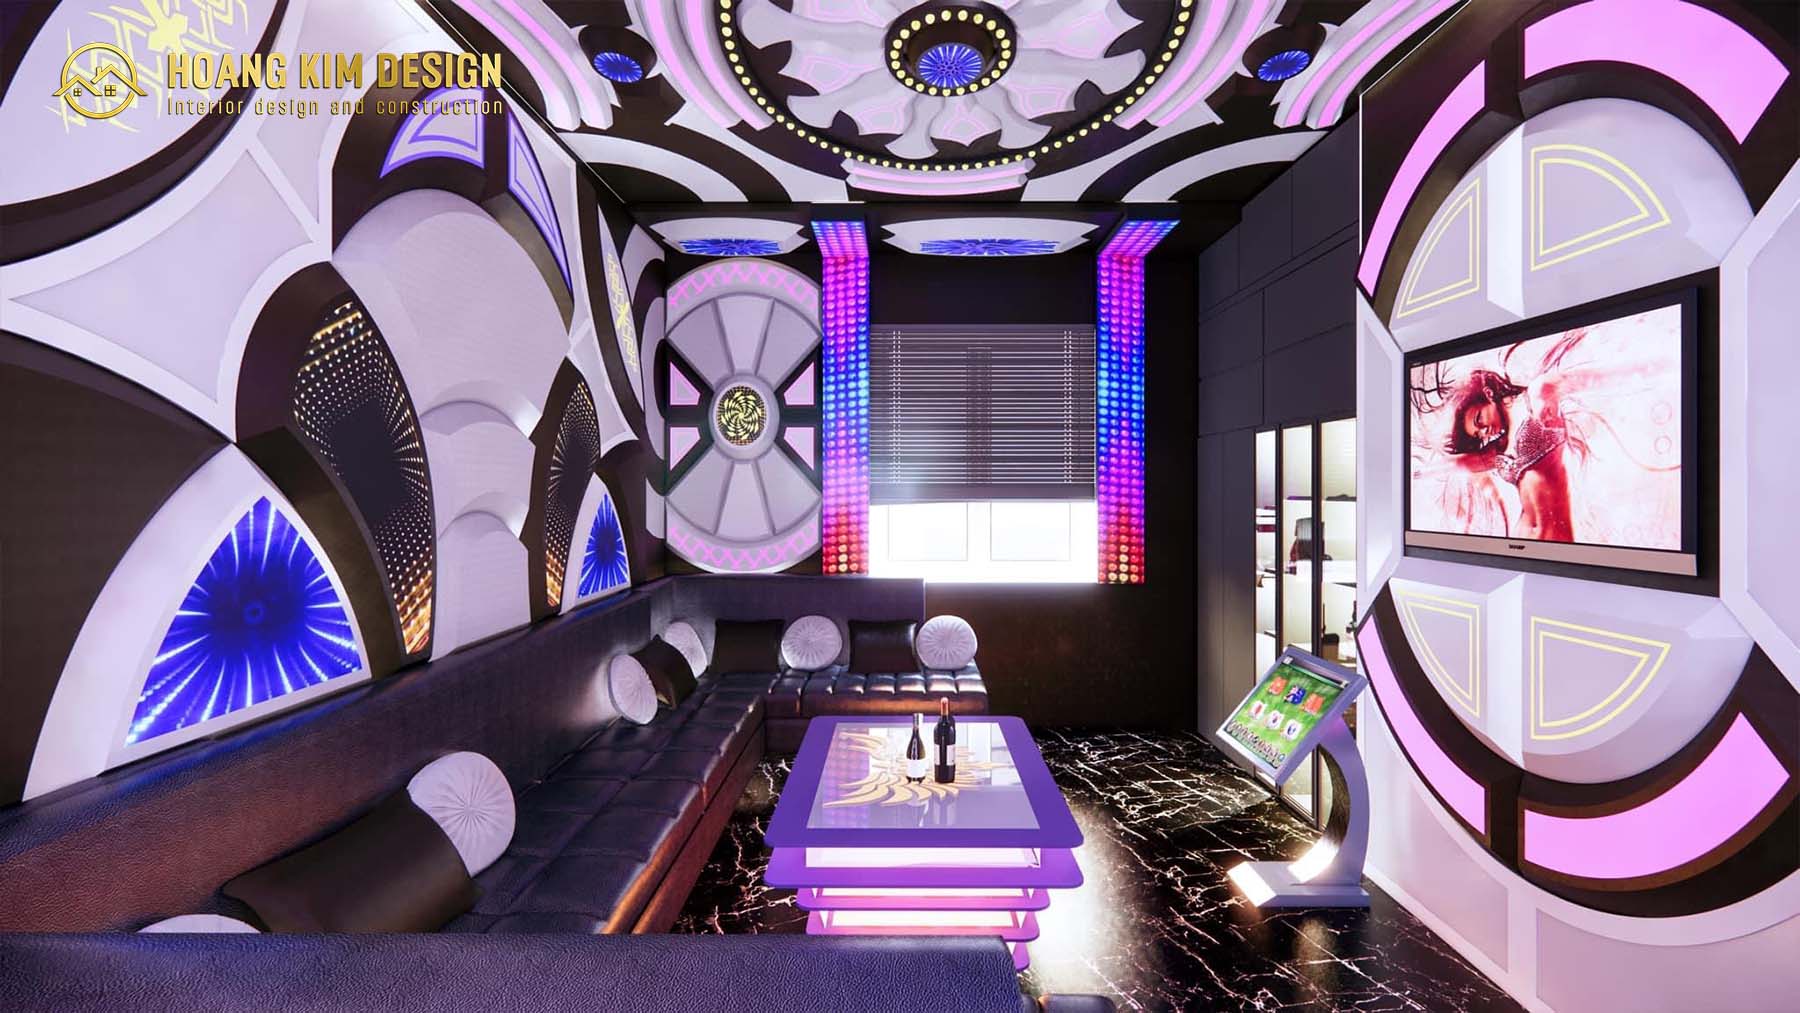 Chính giữa phòng là bàn karaoke được thiết kế sống động kết hợp đèn bên trong